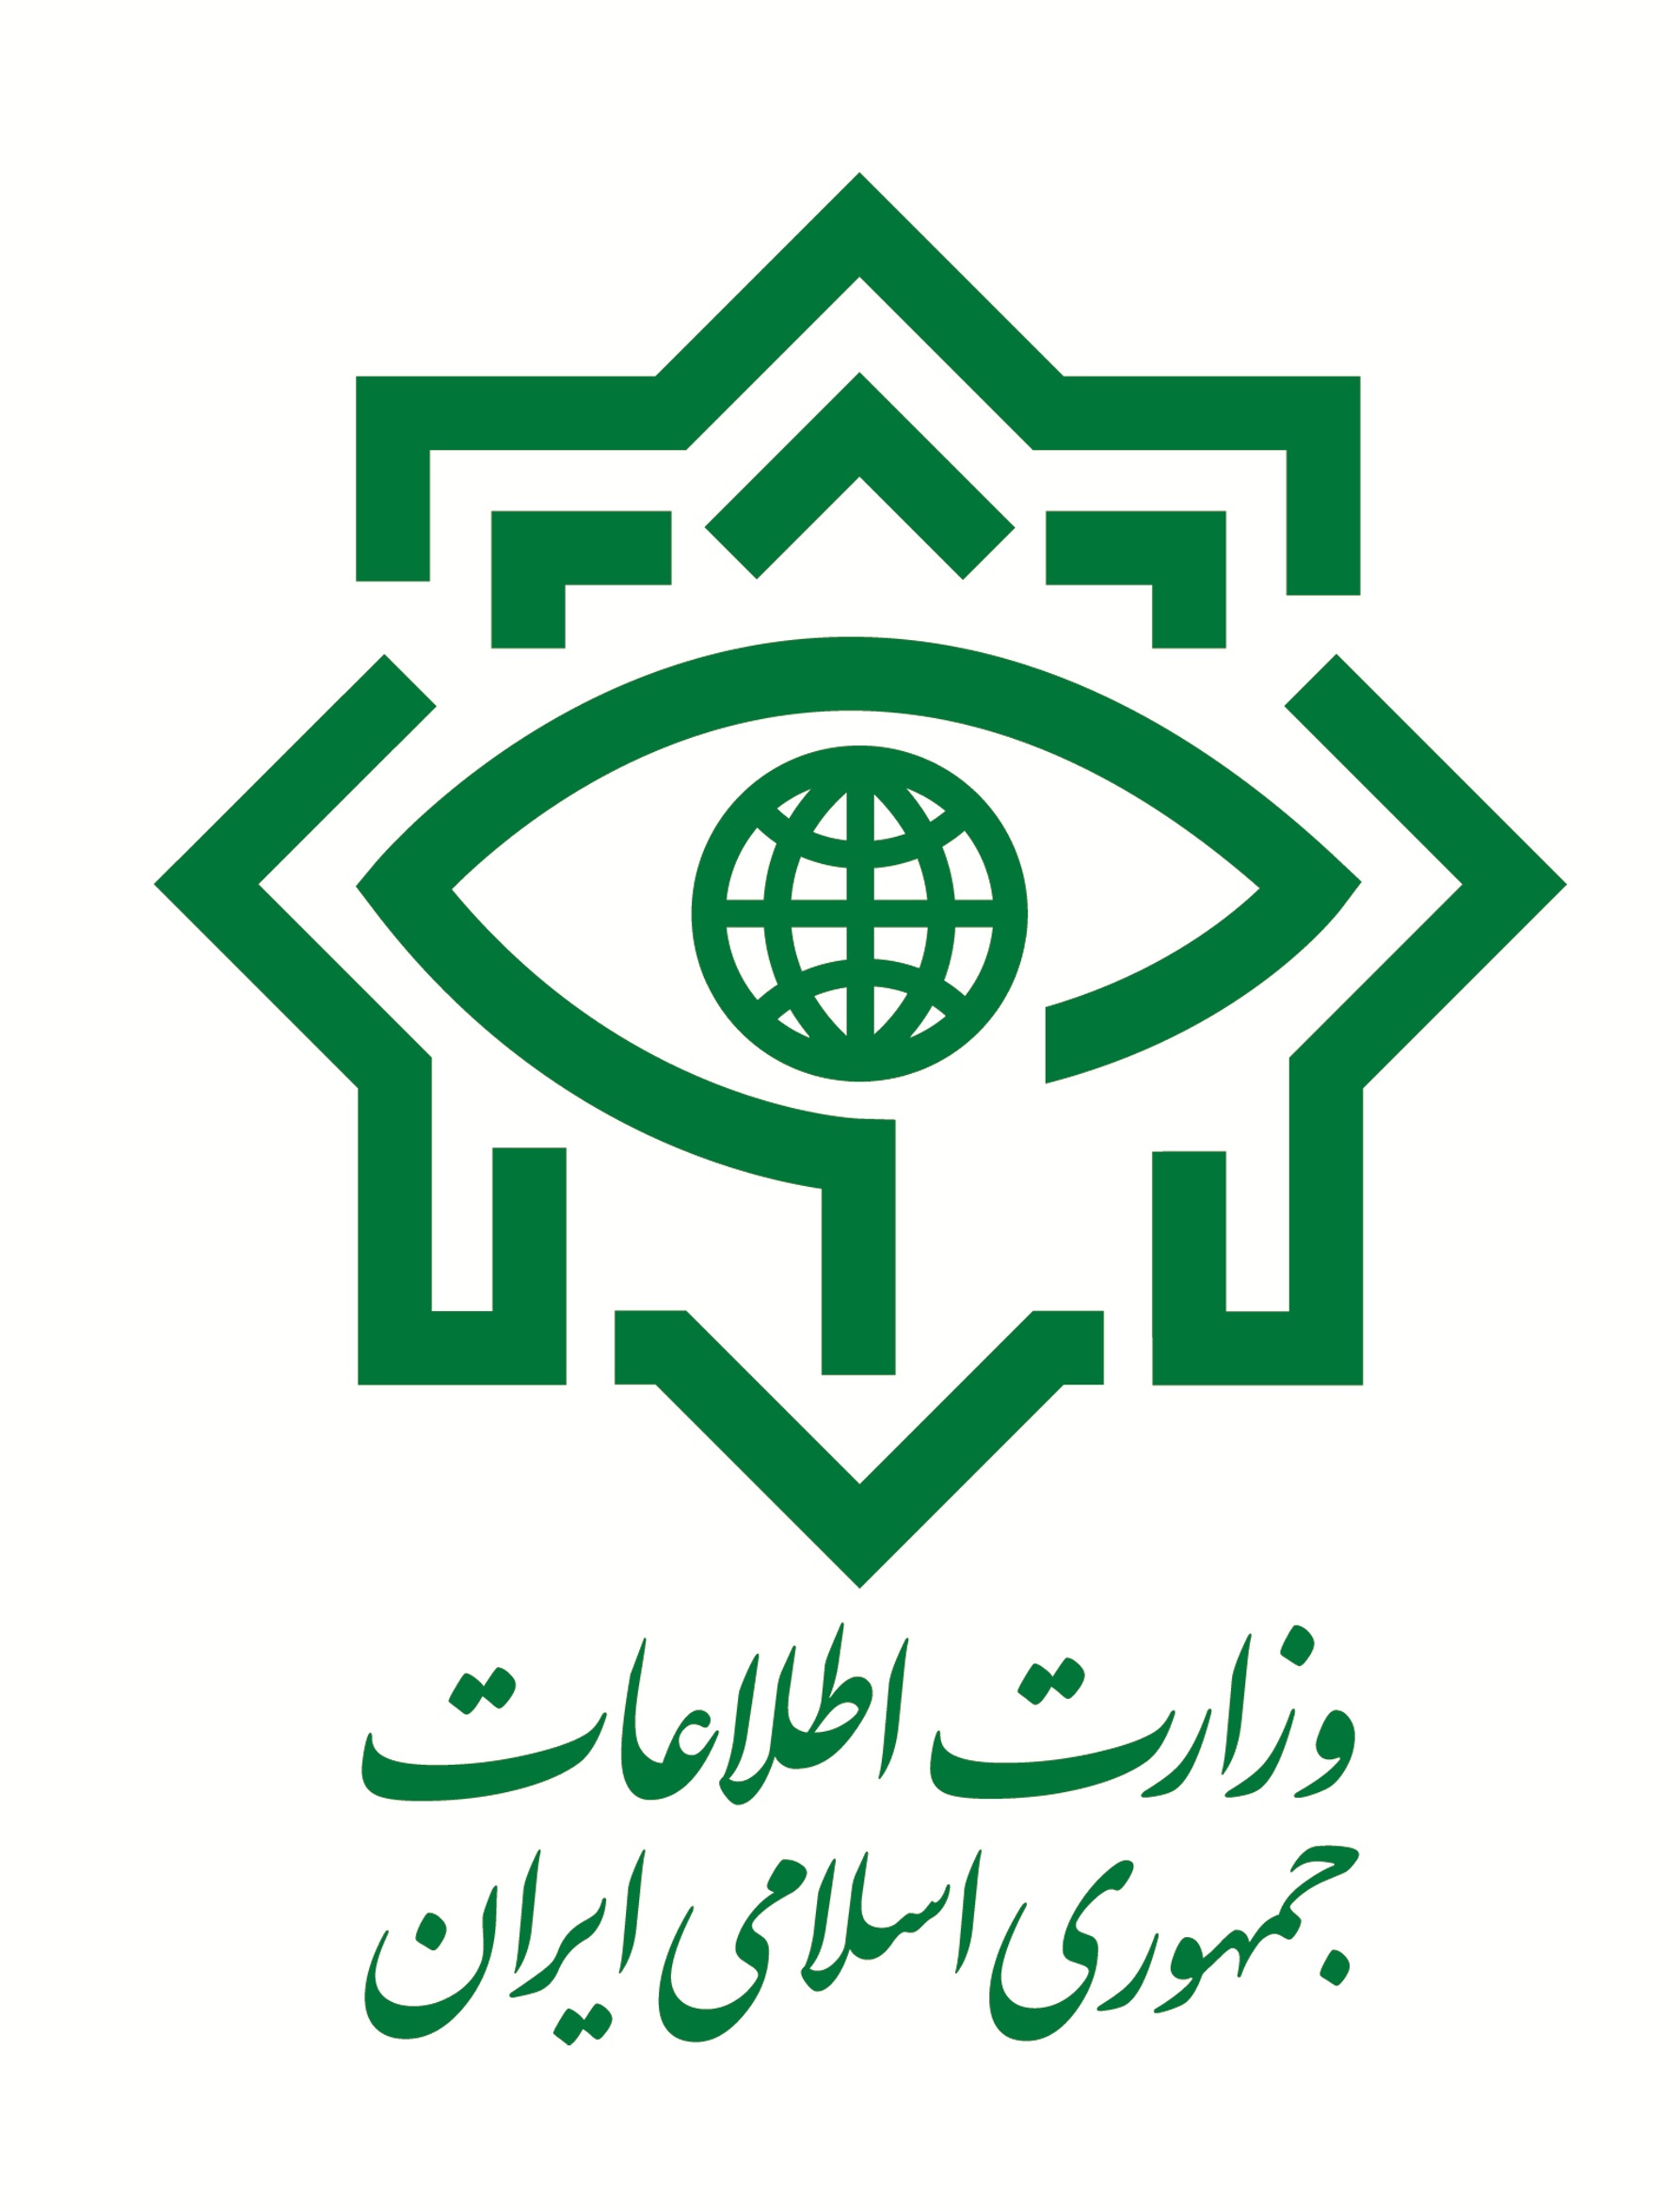 اطلاعیه وزارت اطلاعات درباره انتشار یک عکس در فضای مجازی